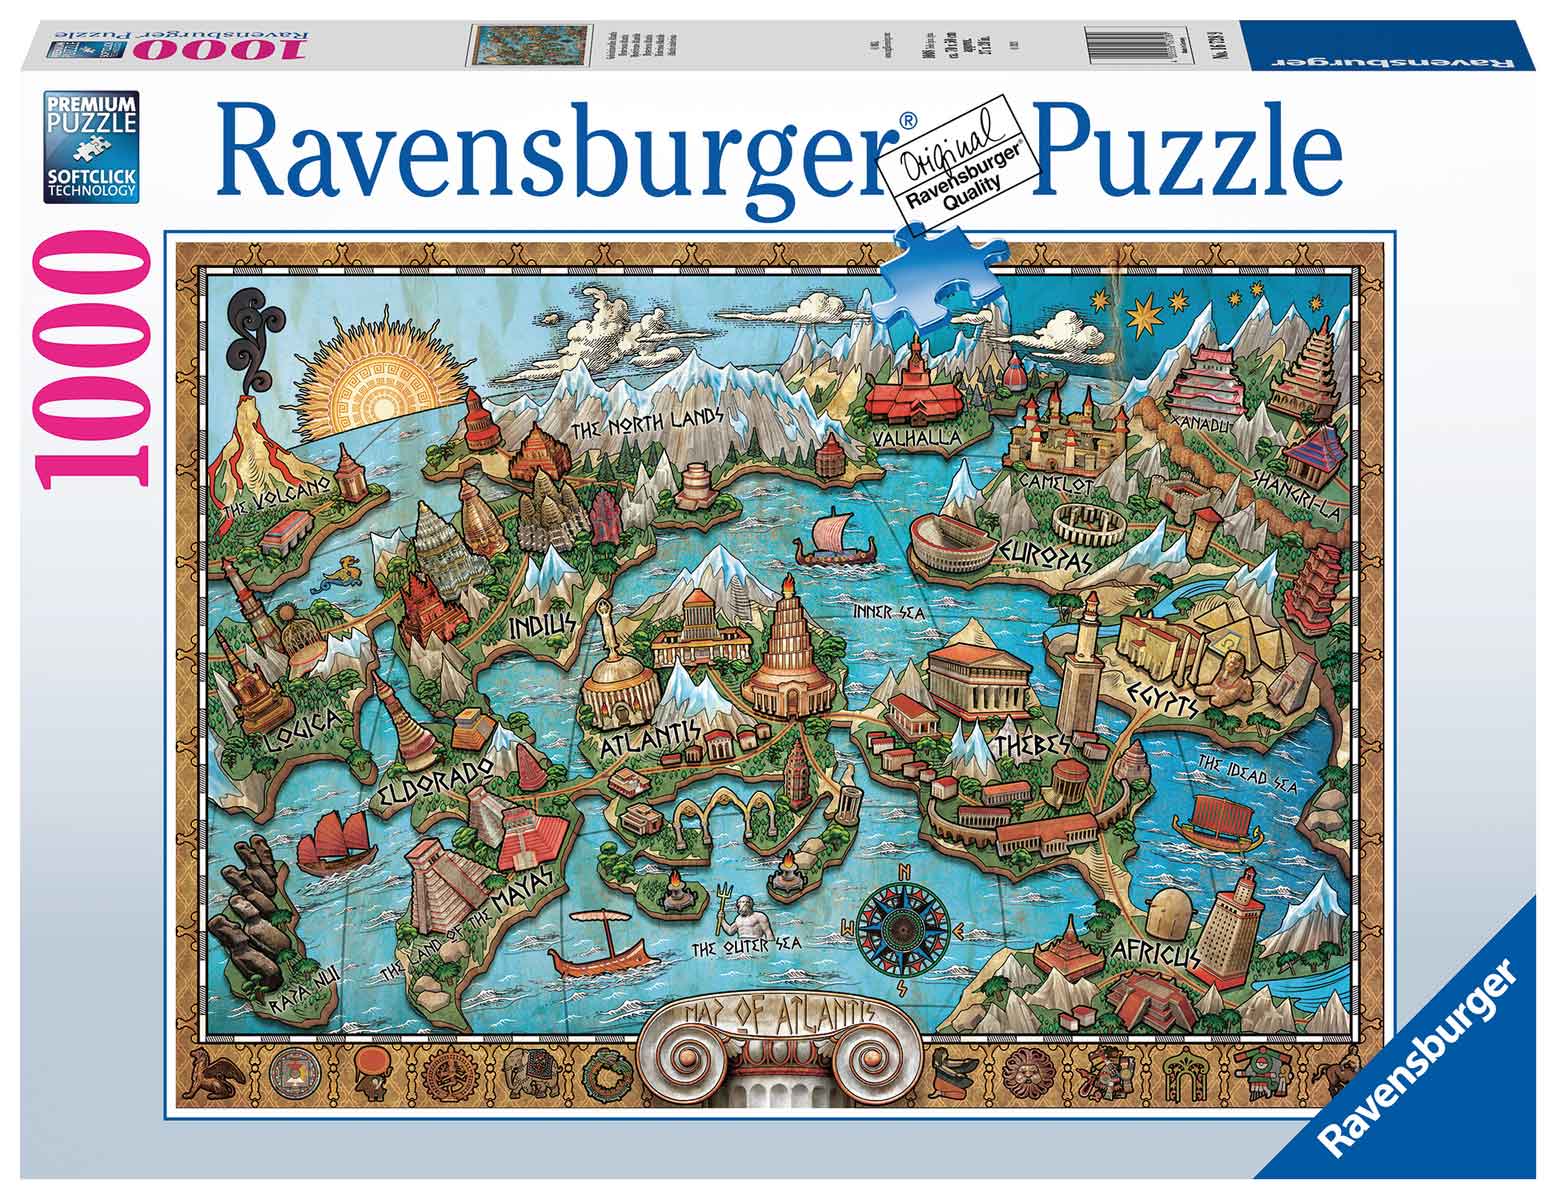 Puzzle Ravensburger Misteriosa Atlantis de 1000 Piezas